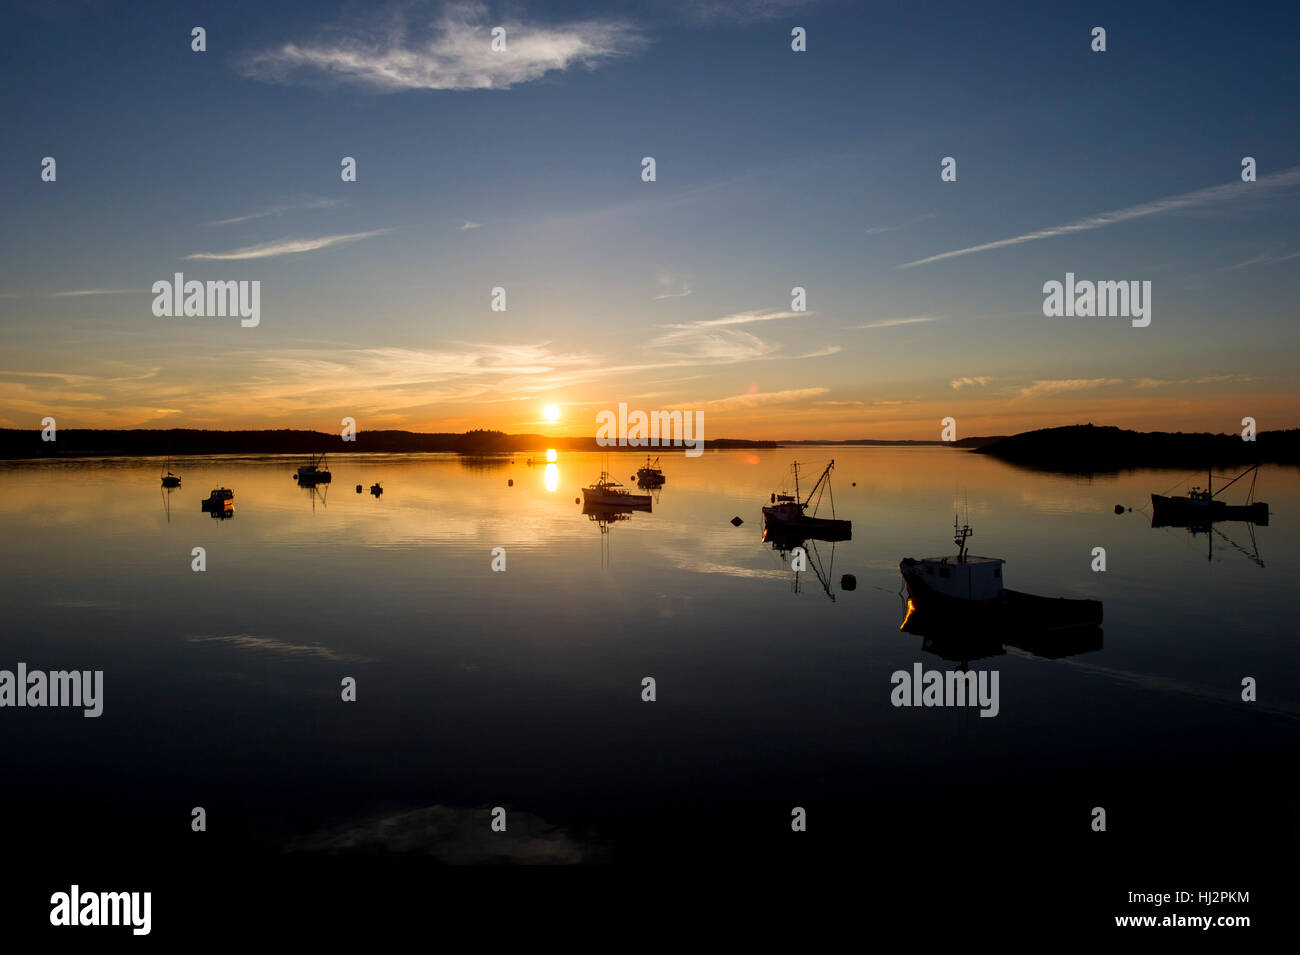 Le soleil se couche sur un port calme avec de nombreux bateaux de pêche ancrés. Banque D'Images